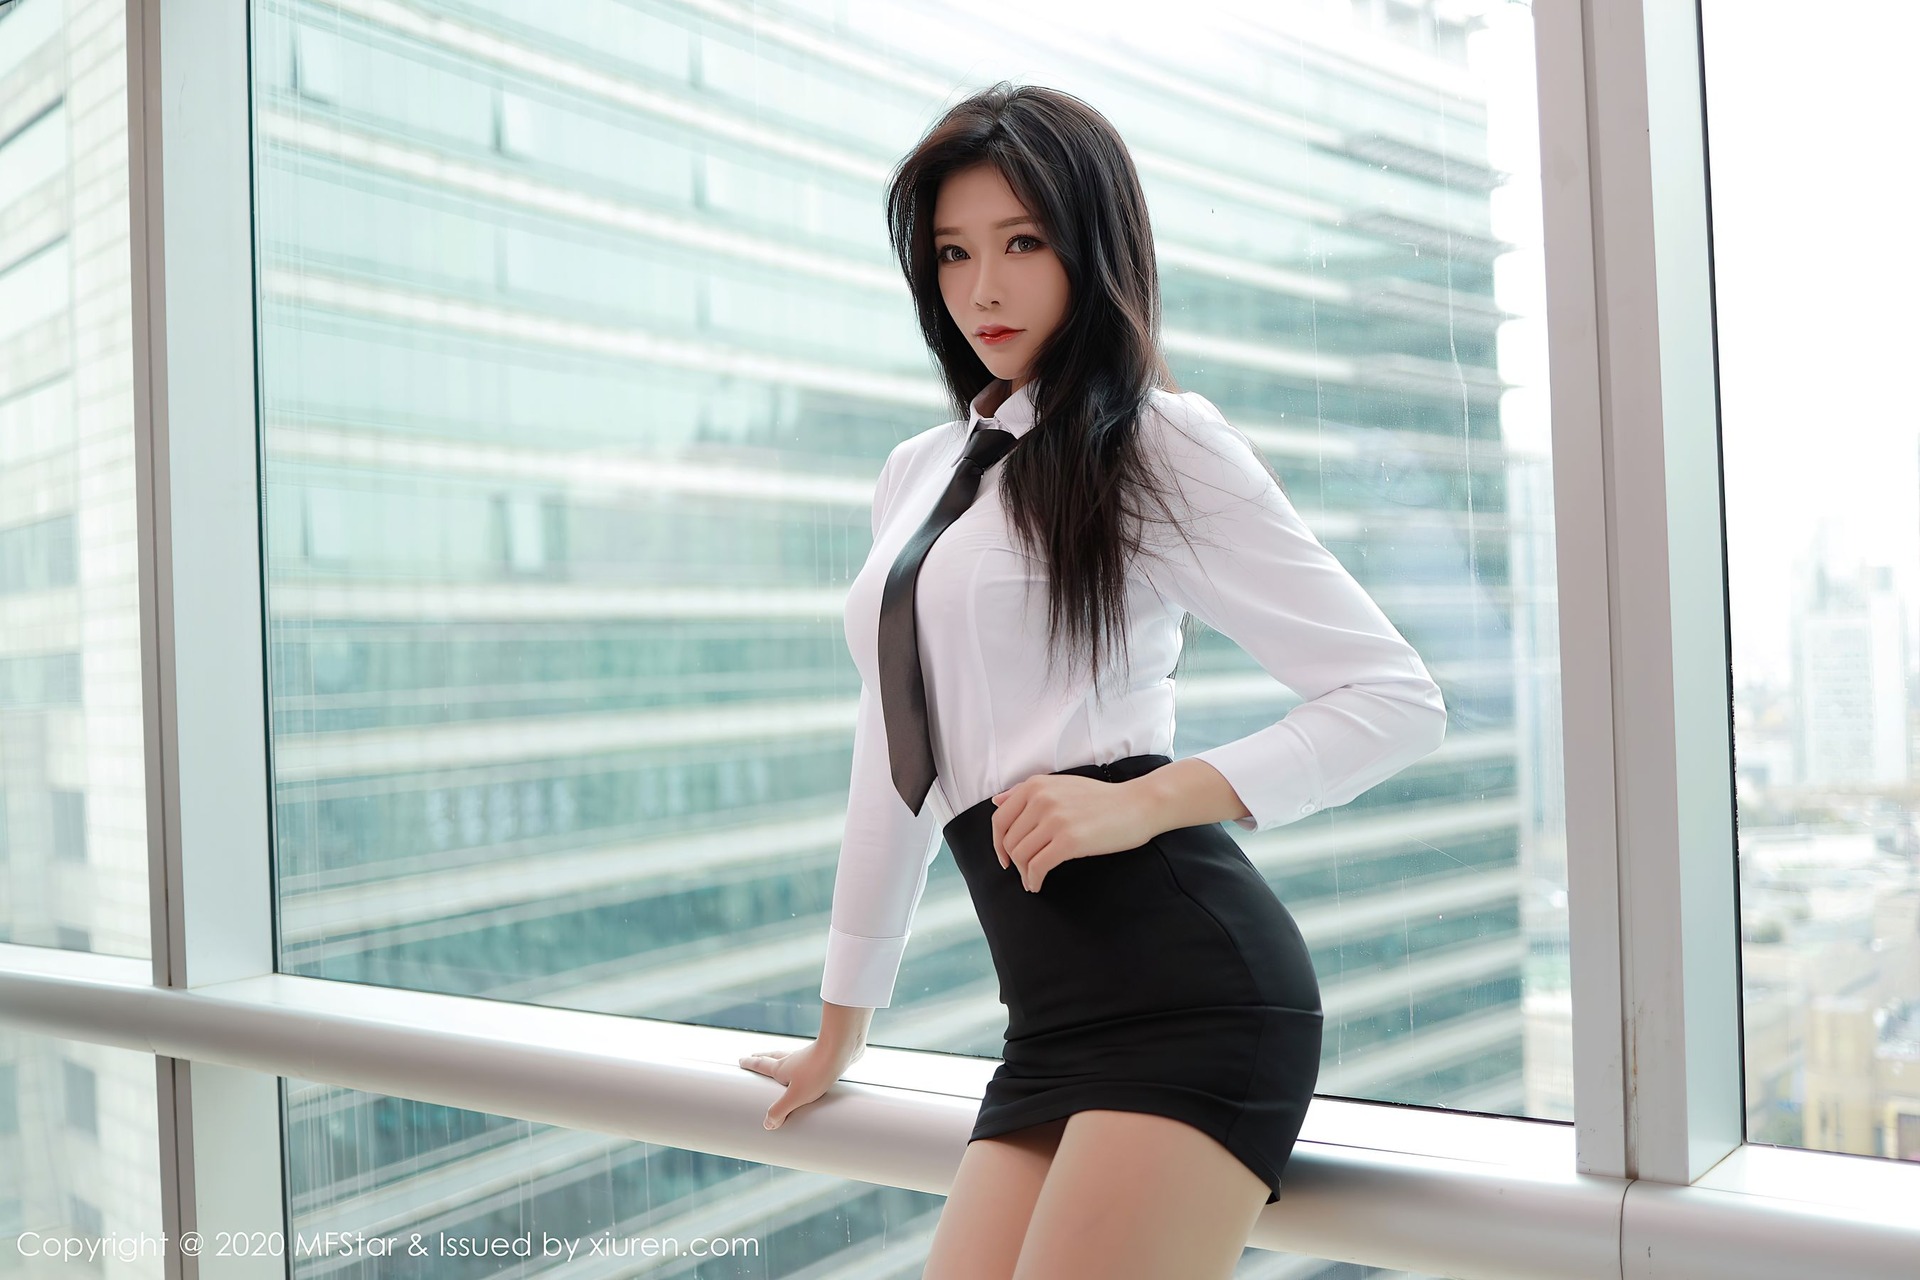 Women Model Chinese Model Asian Tie White Shirt Long Hair Brunette Dark ...